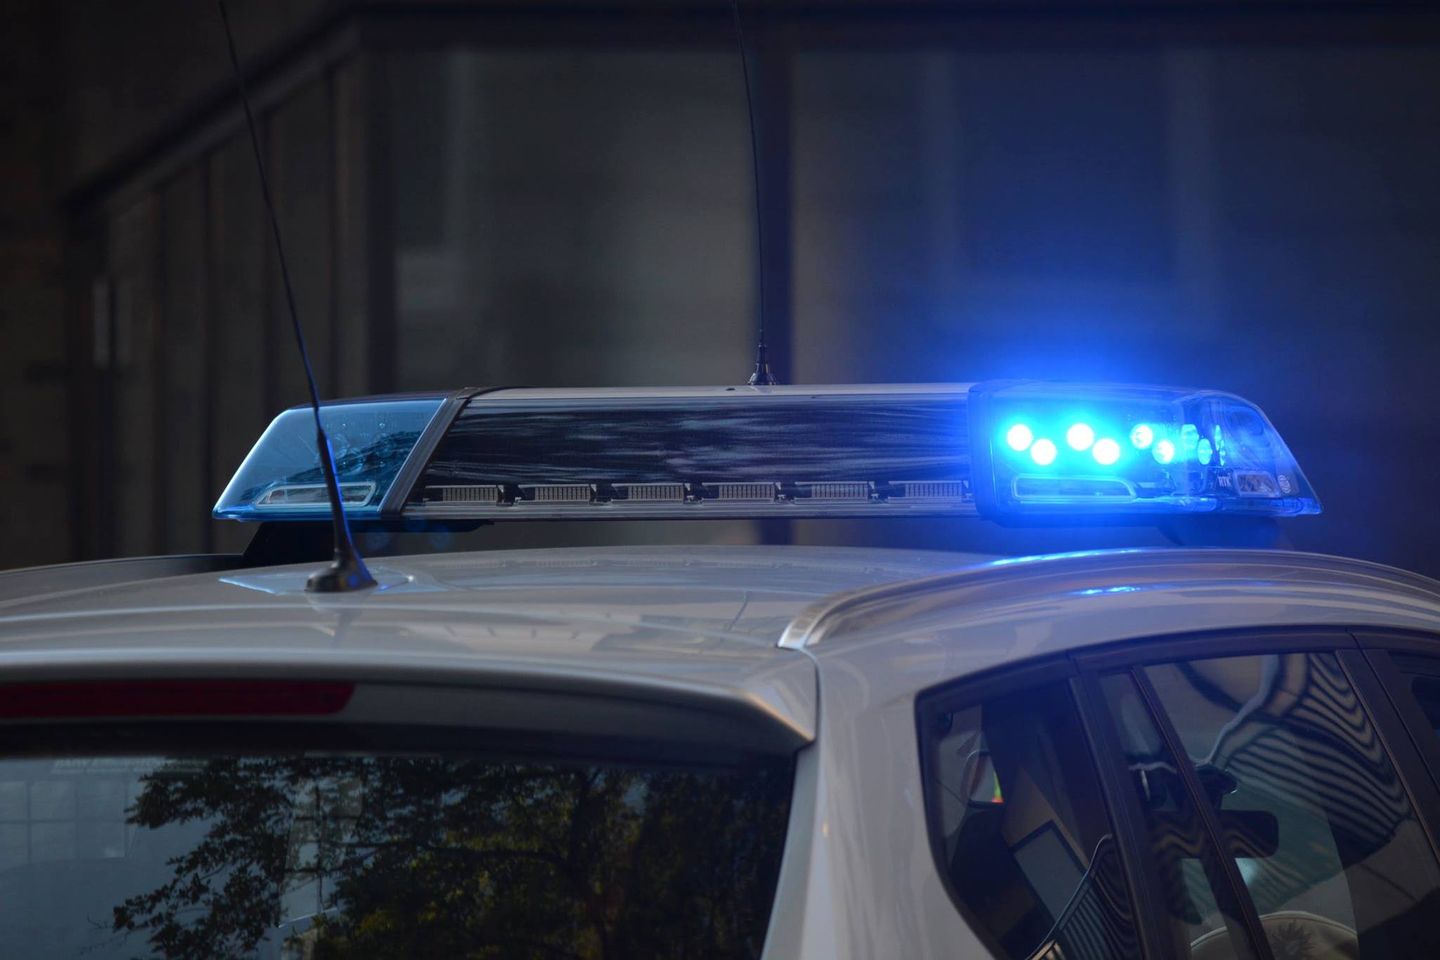 Αστυνομικός μετέφερε 100 κιλά κάνναβη με υπηρεσιακό όχημα